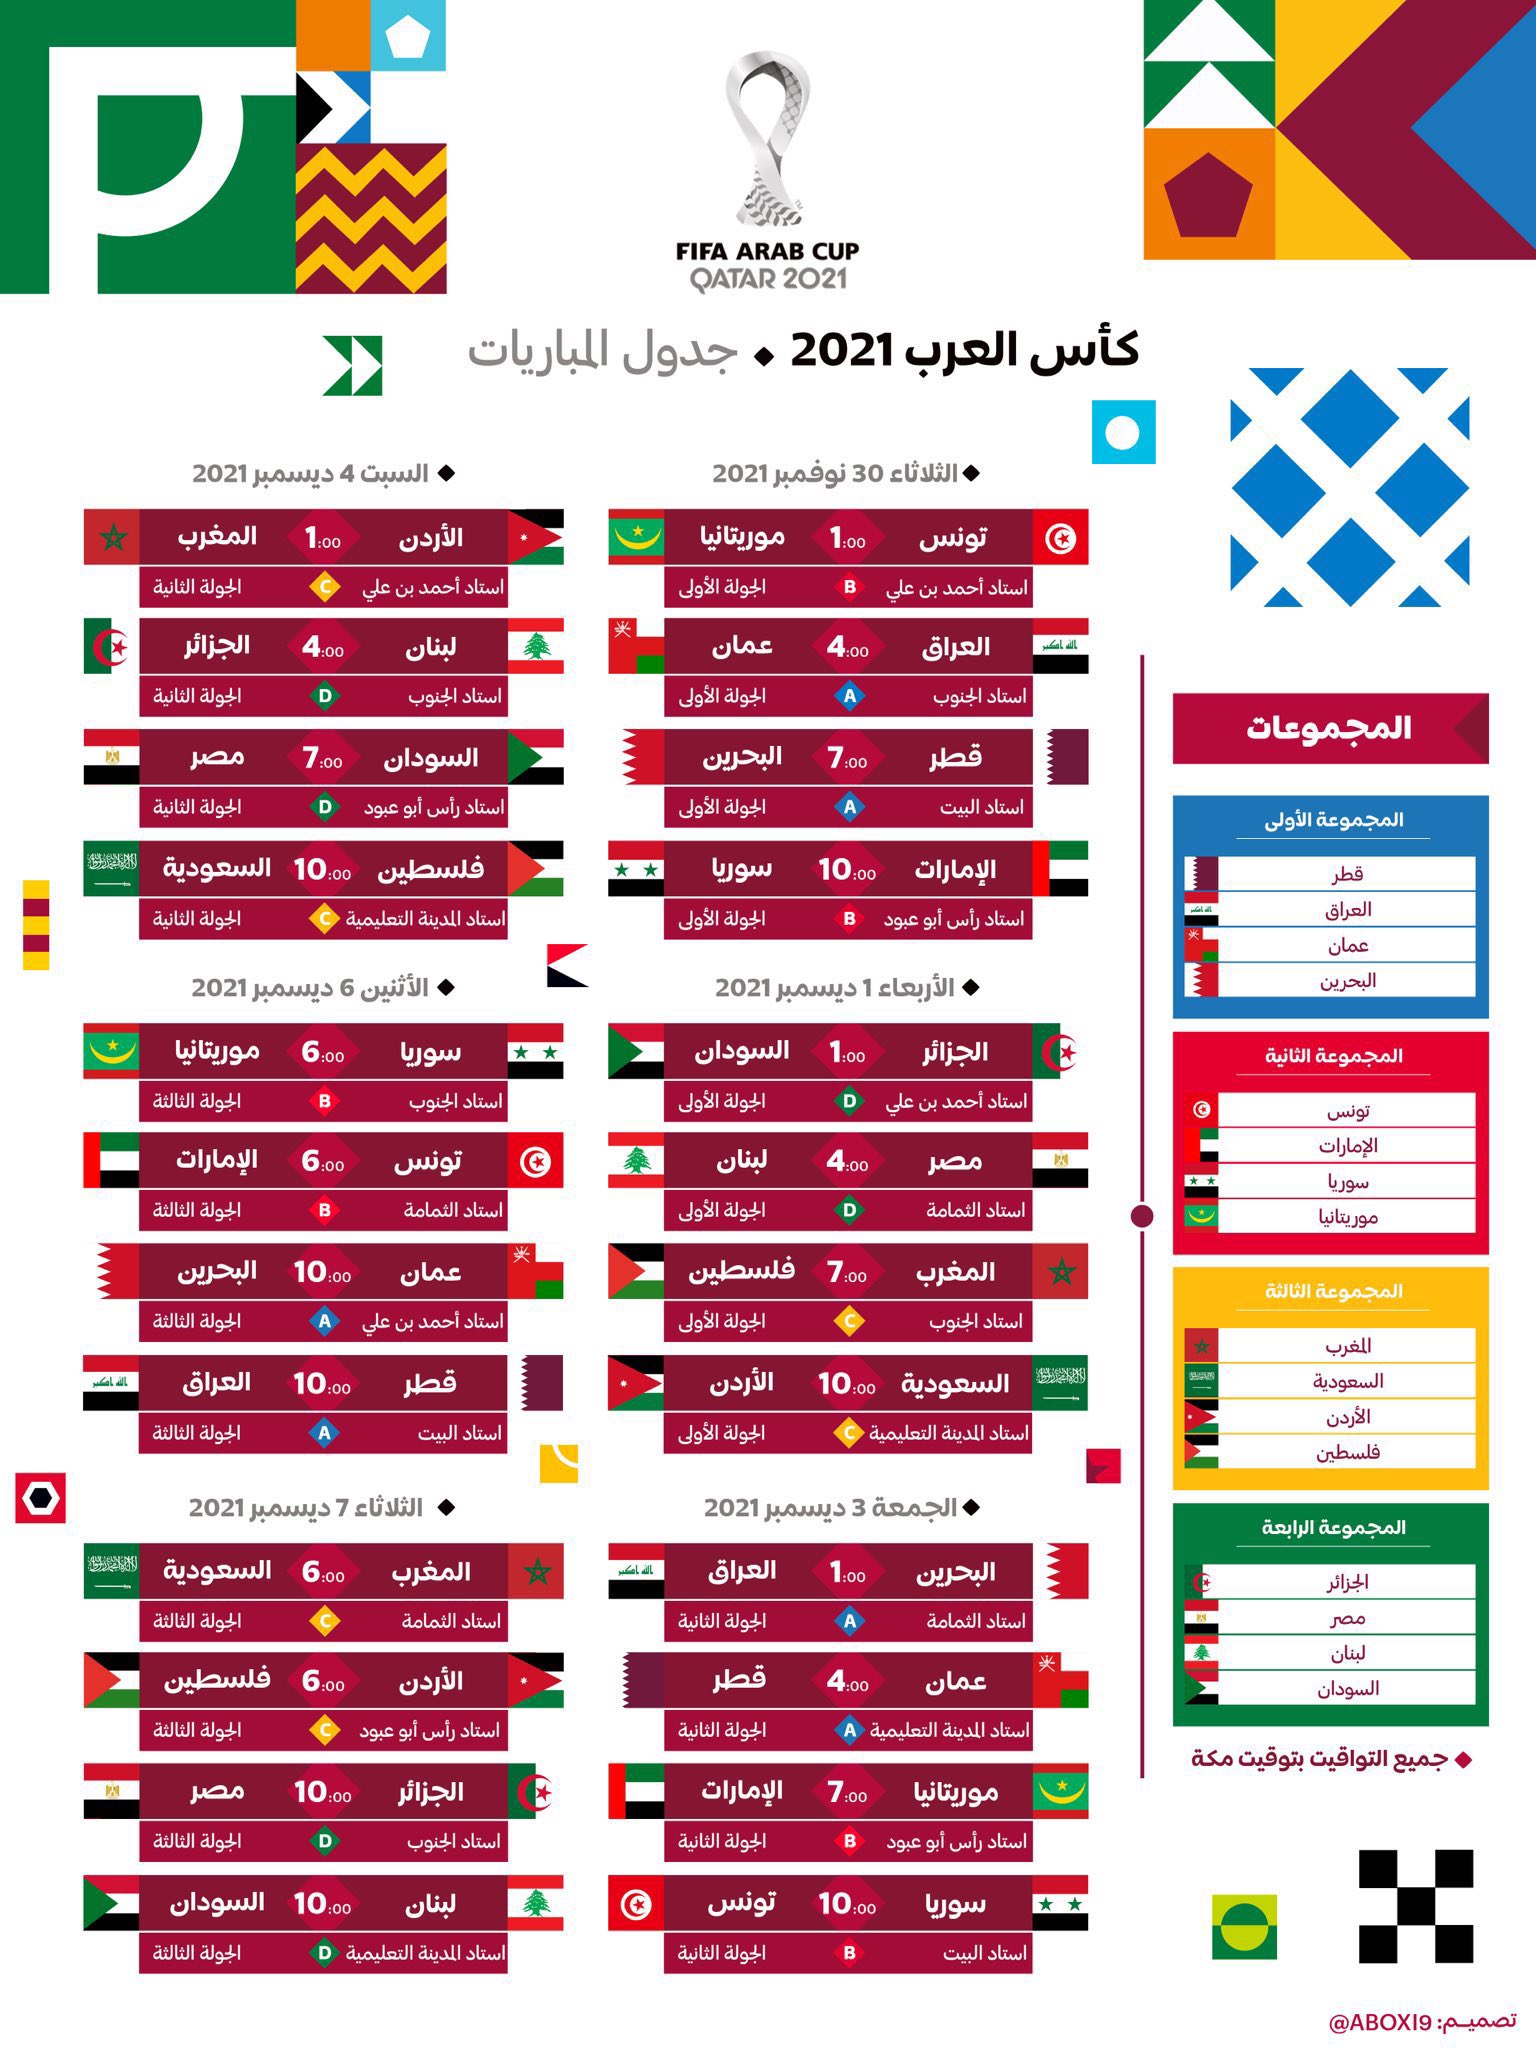 العرب للمنتخبات كأس بطولة هل بطولة